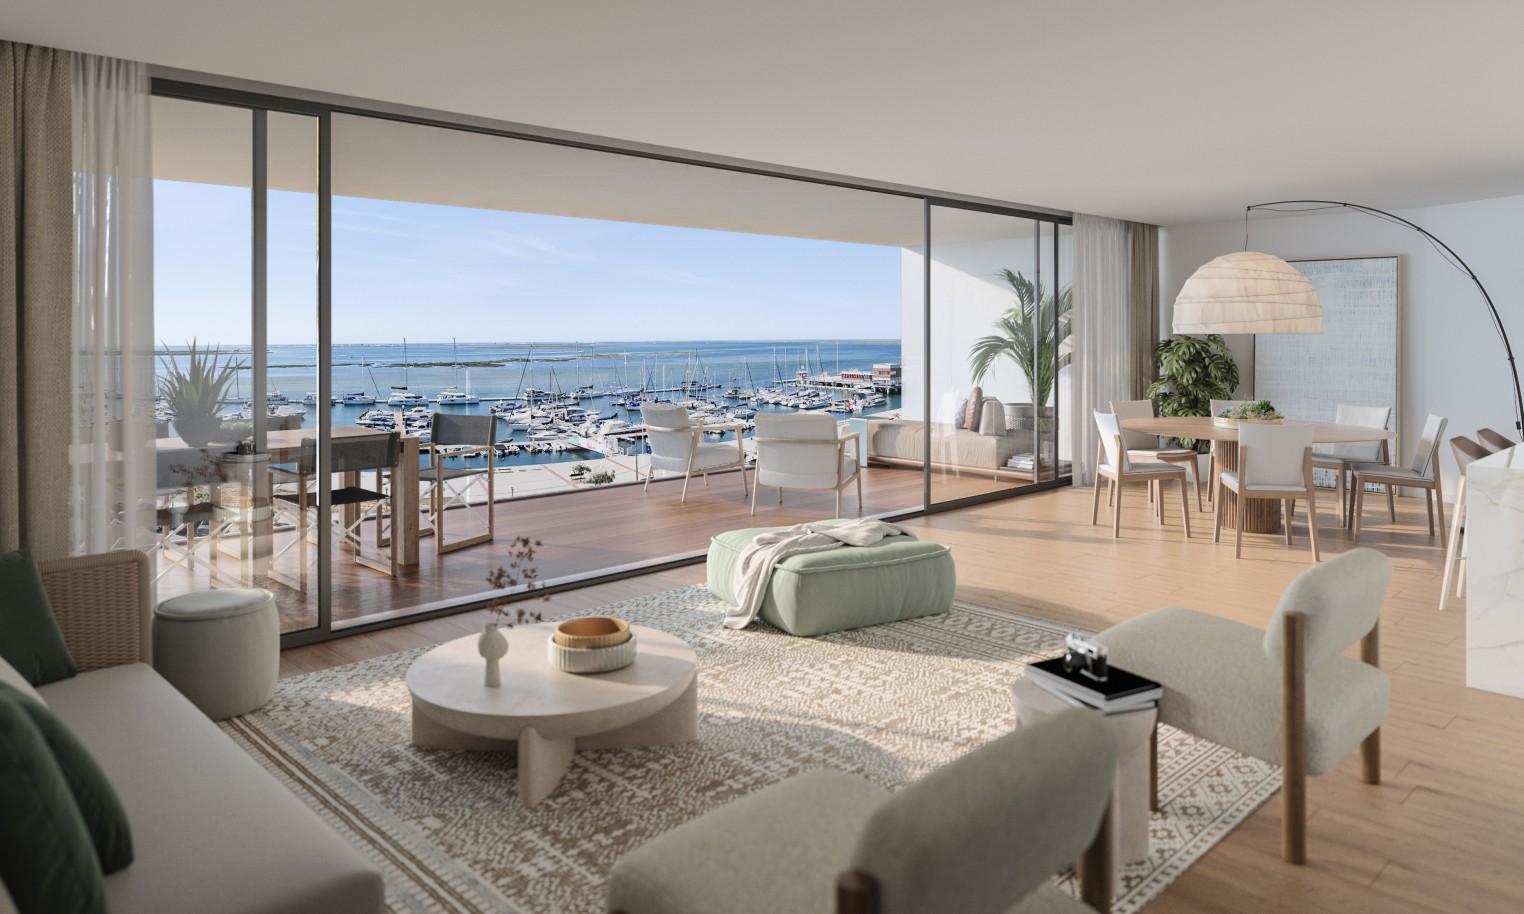 Pisos nuevos con vistas al mar, 1, 2 y 3 dormitorios, en venta en Olhão, Algarve_243713